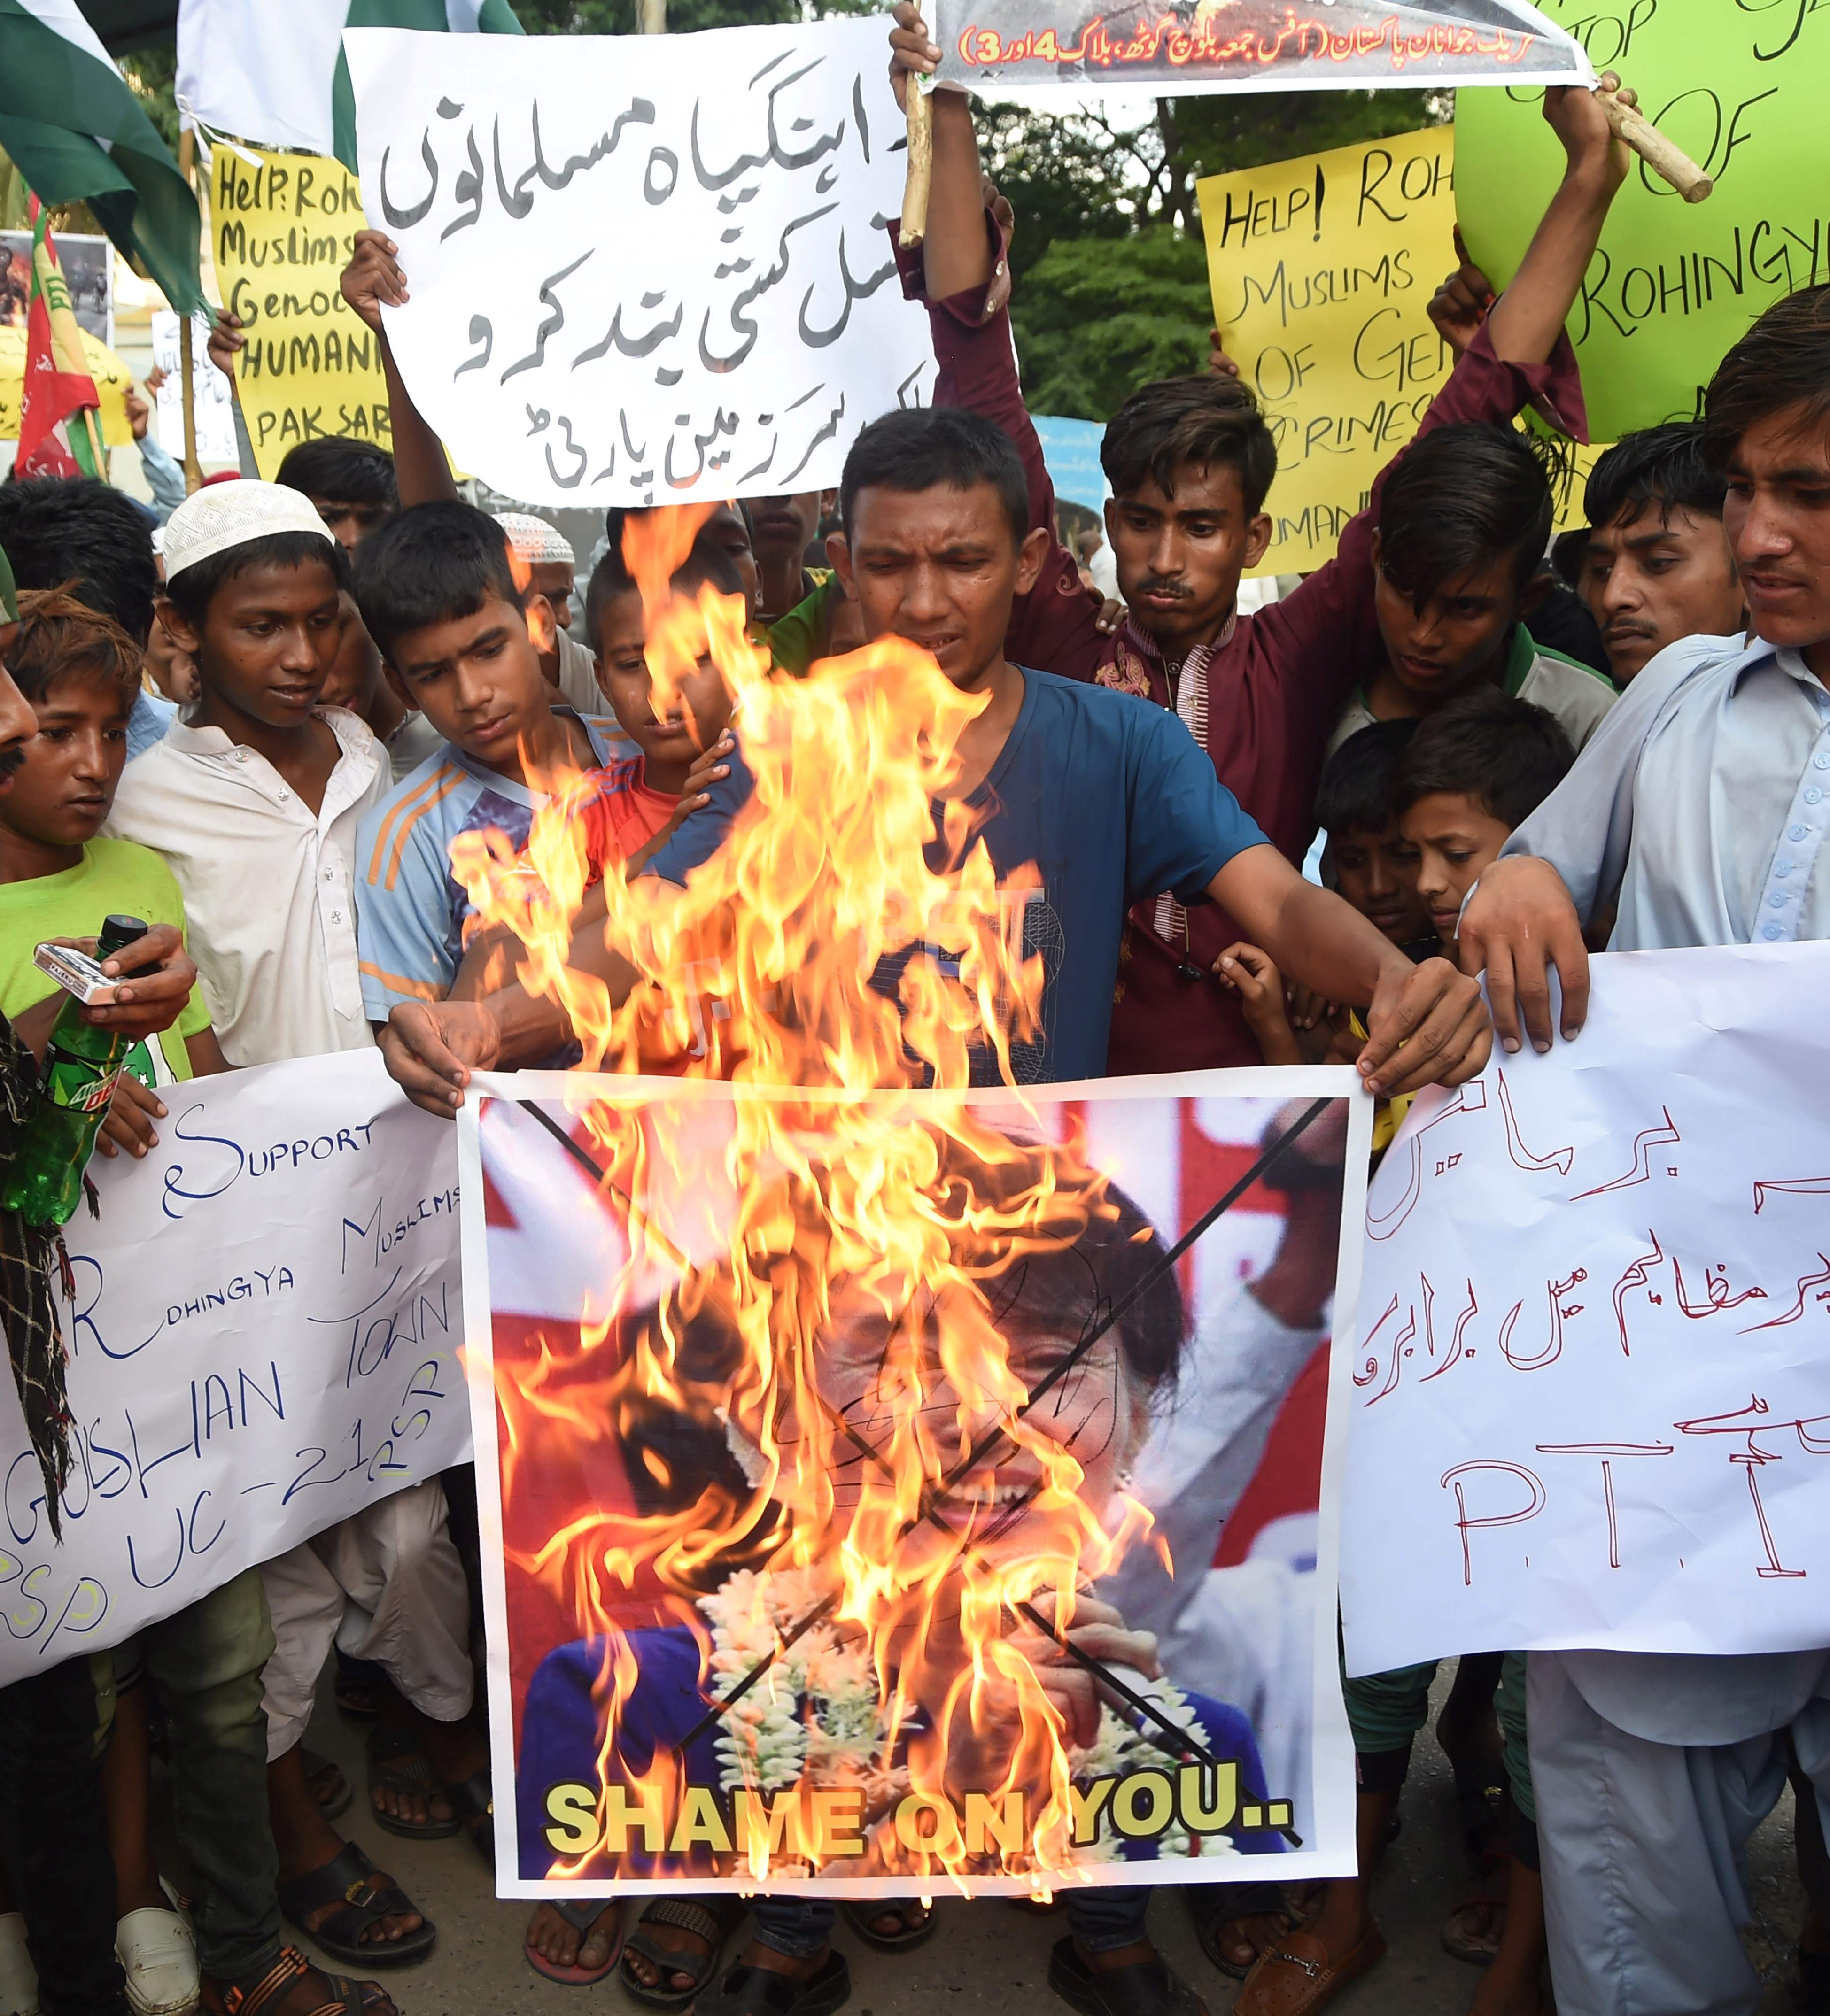 المحتجون فى باكستان يشعلون صورة رئيسة وزراء بورما